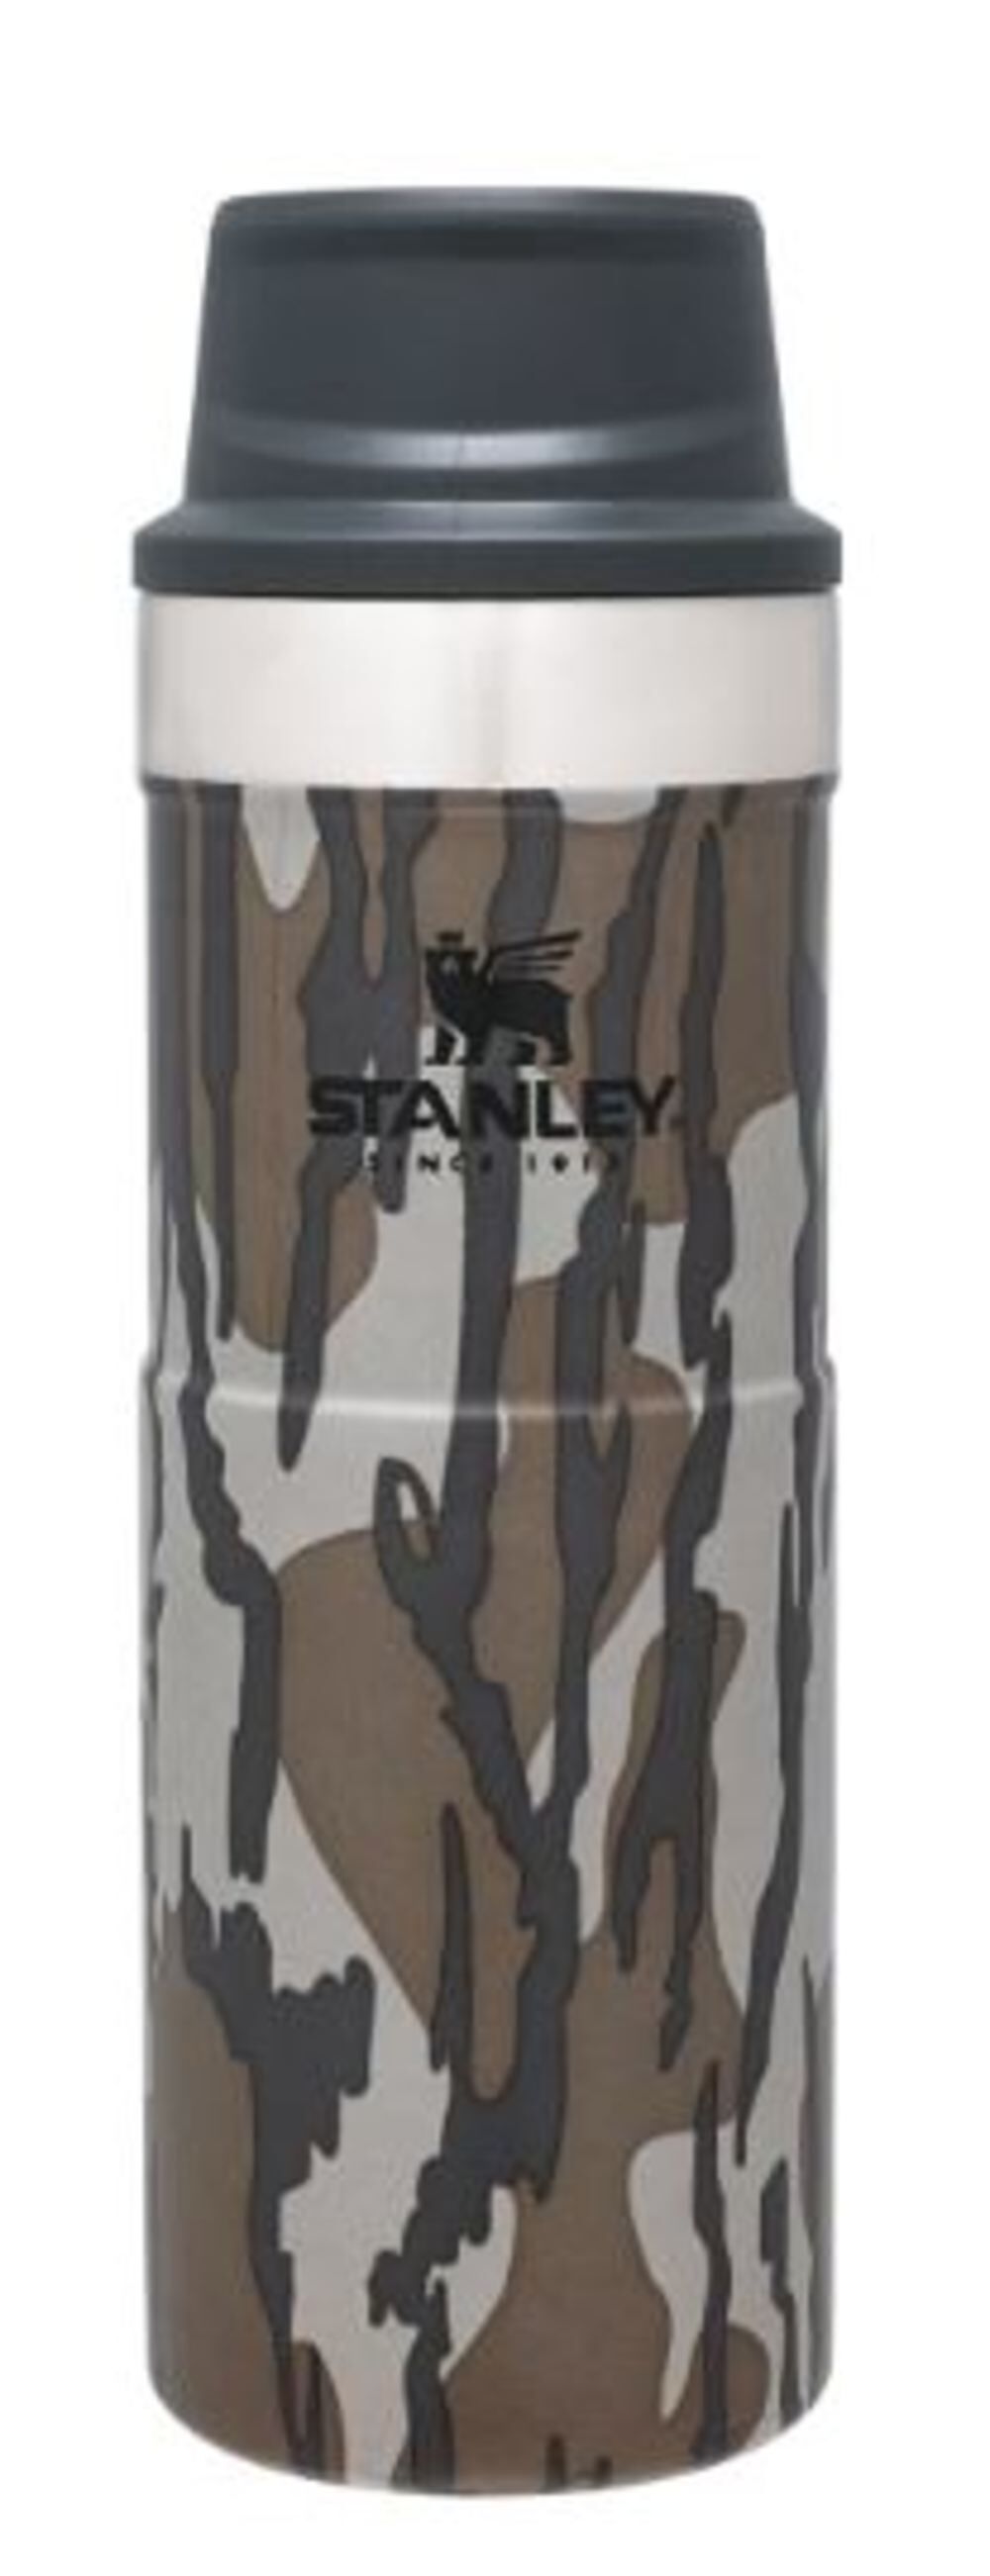 Stanley Trigger Action Travel Mug 16oz - 06439